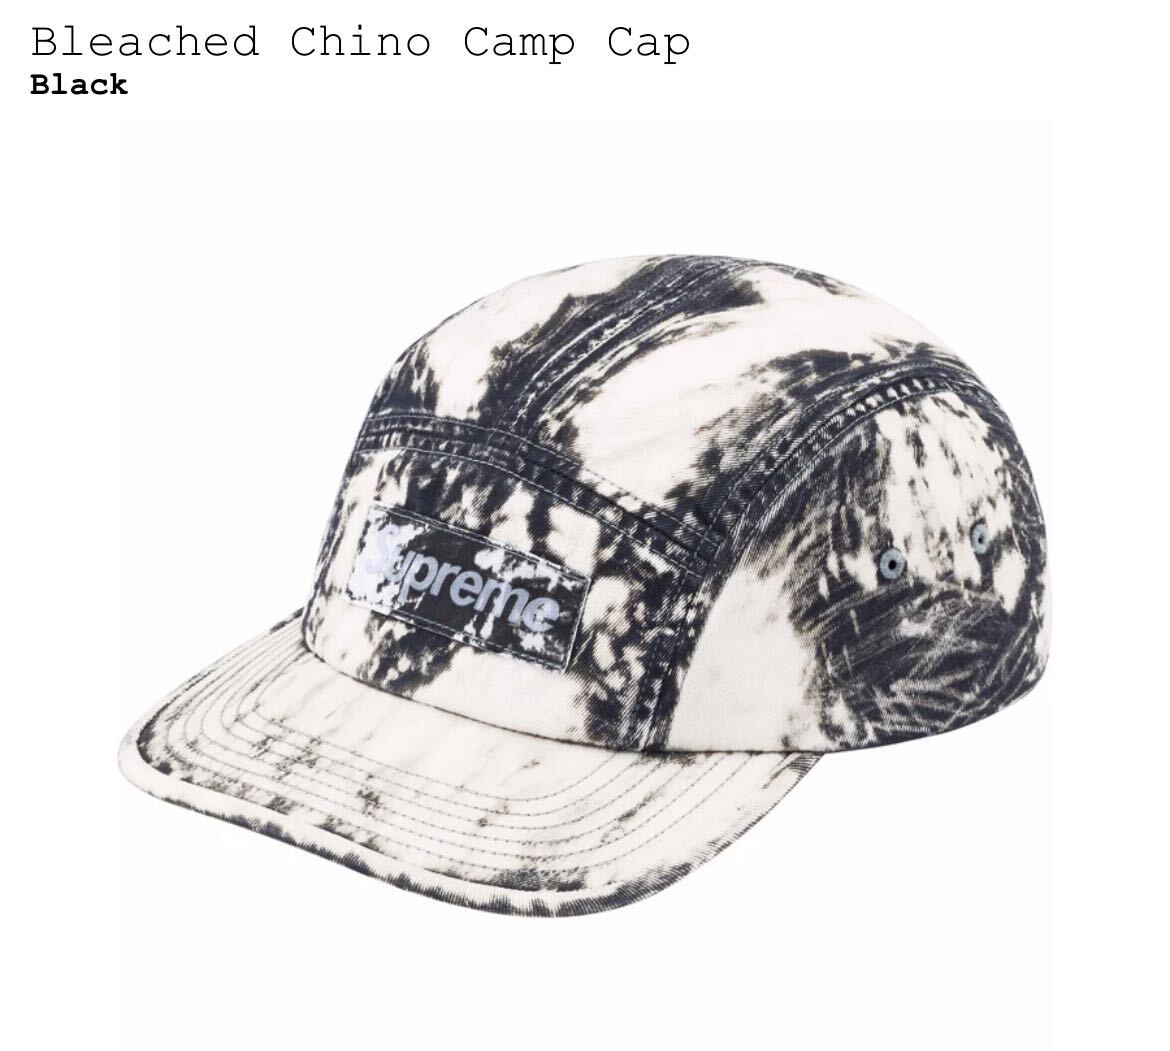 シュプリーム Supreme Bleached Chino Camp Cap キャップの画像1